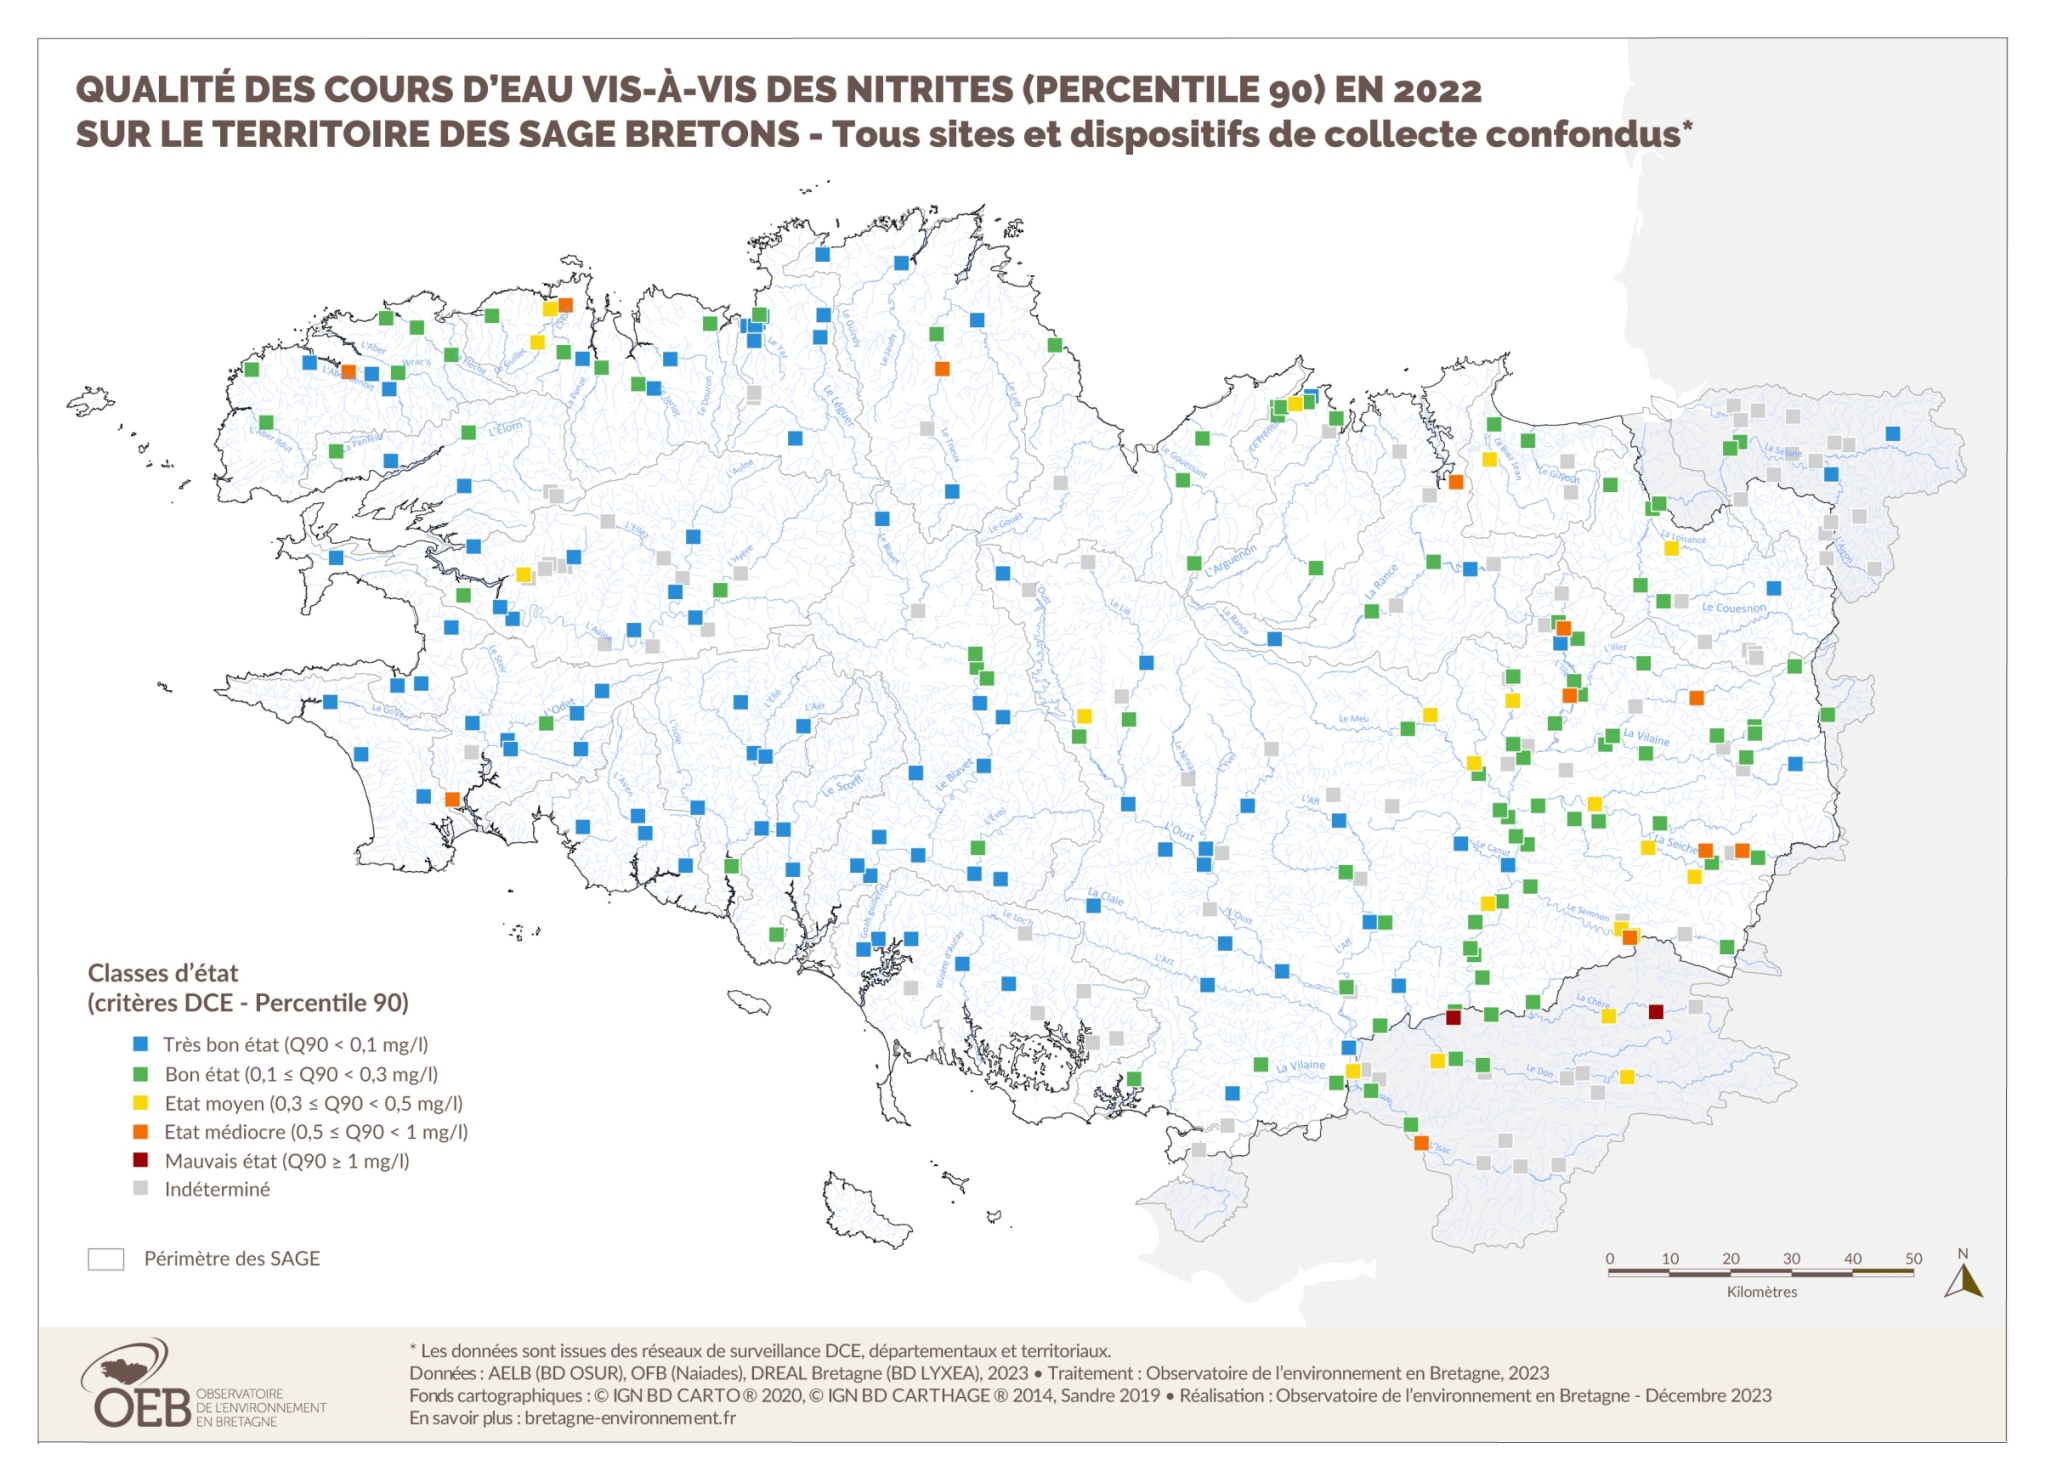 Qualité des cours d'eau bretons vis-à-vis des nitrites (Q90) en 2022